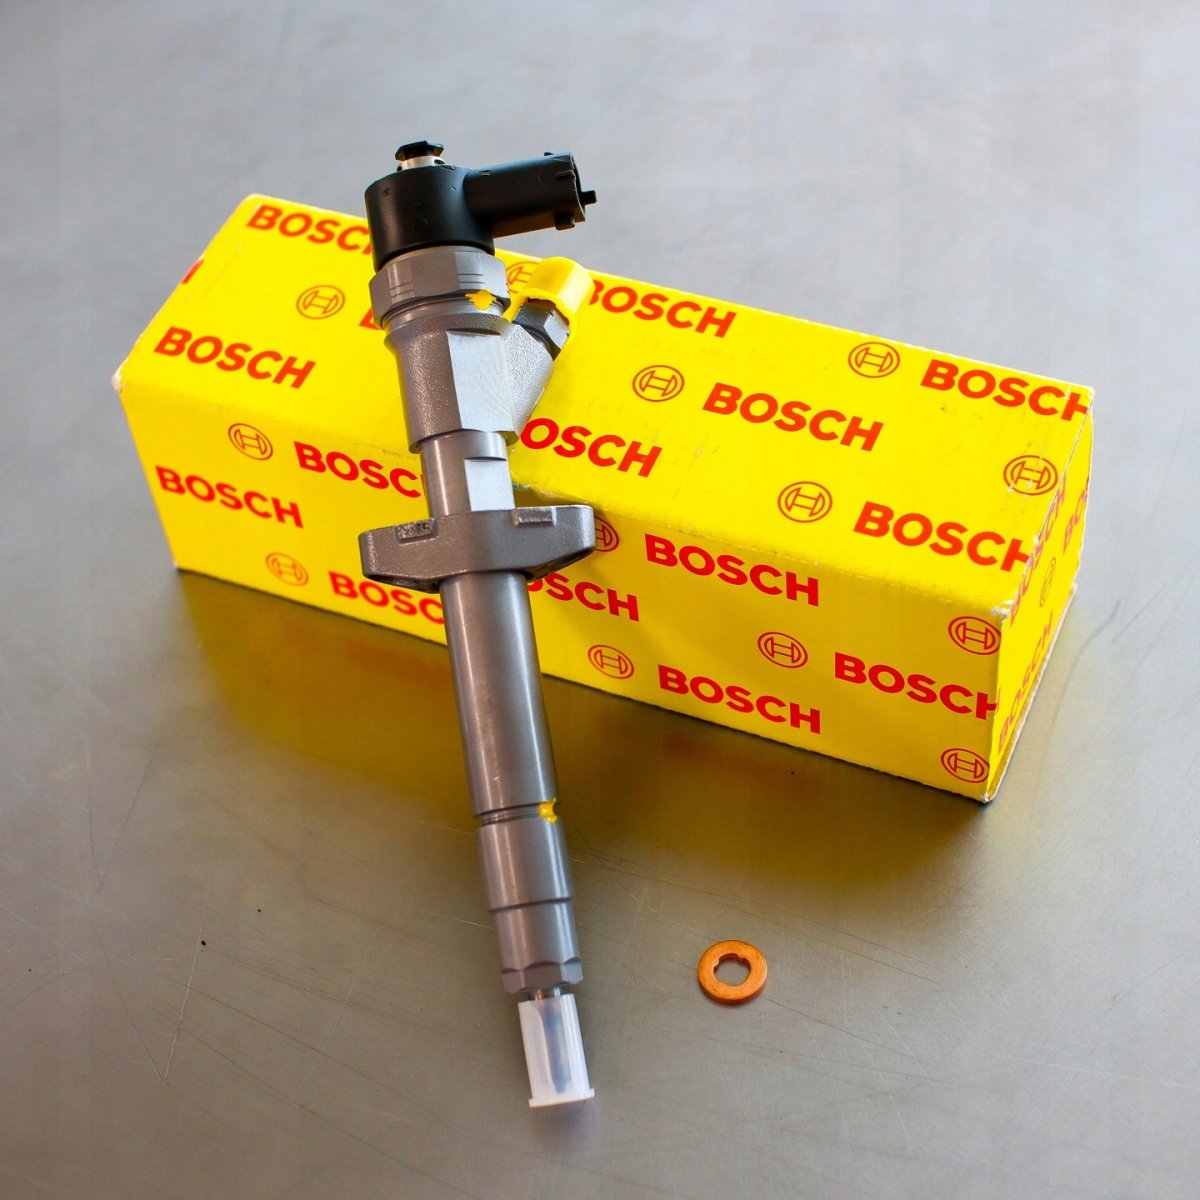 Wtryskiwacz Bosch naprawiony gotowy do wysyłki do Klienta z gwarancją na 2 lata - niska cena